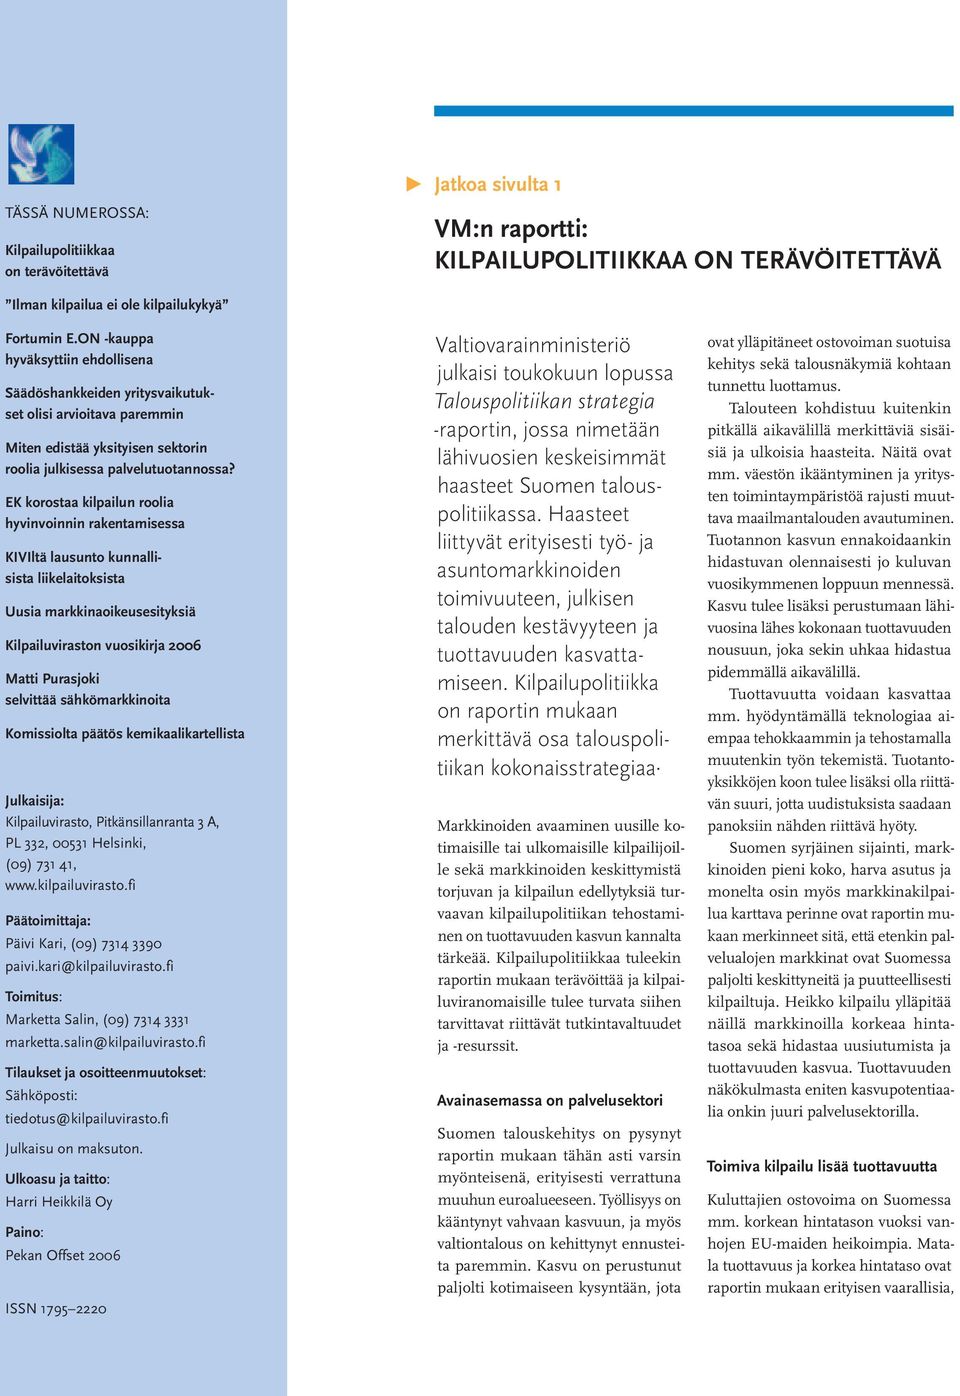 EK korostaa kilpailun roolia hyvinvoinnin rakentamisessa KIVIltä lausunto kunnallisista liikelaitoksista Uusia markkinaoikeusesityksiä Kilpailuviraston vuosikirja 2006 Matti Purasjoki selvittää